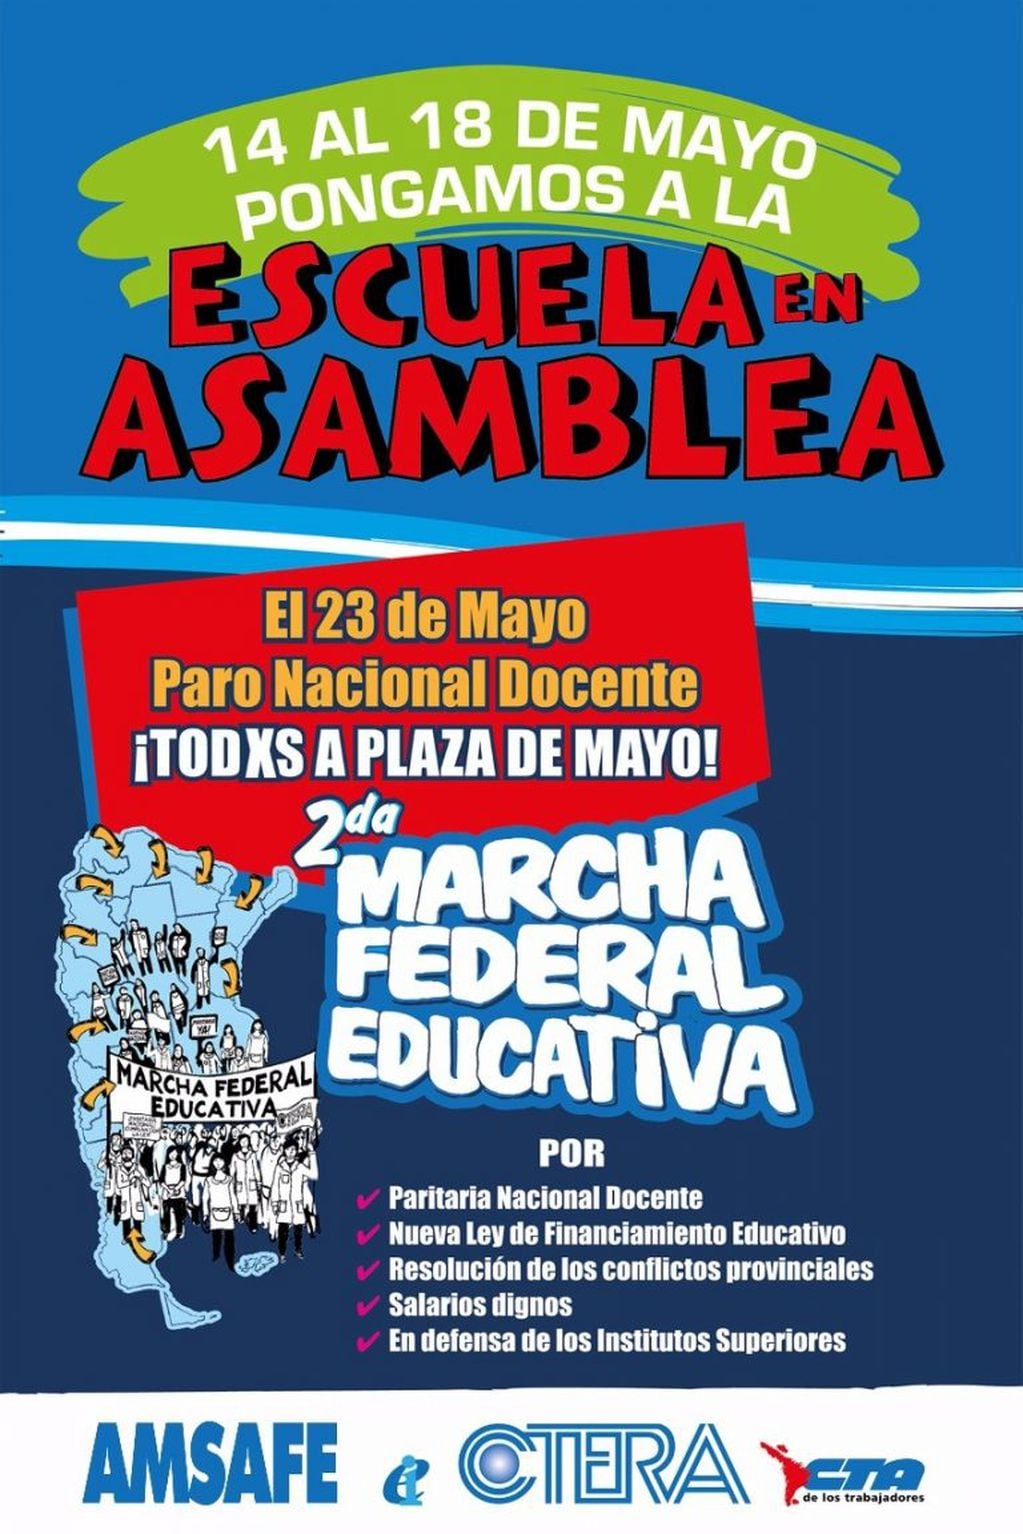 La Marcha Federal Educativa llegará el 23 de mayo a Buenos Aires. (Amsafe)